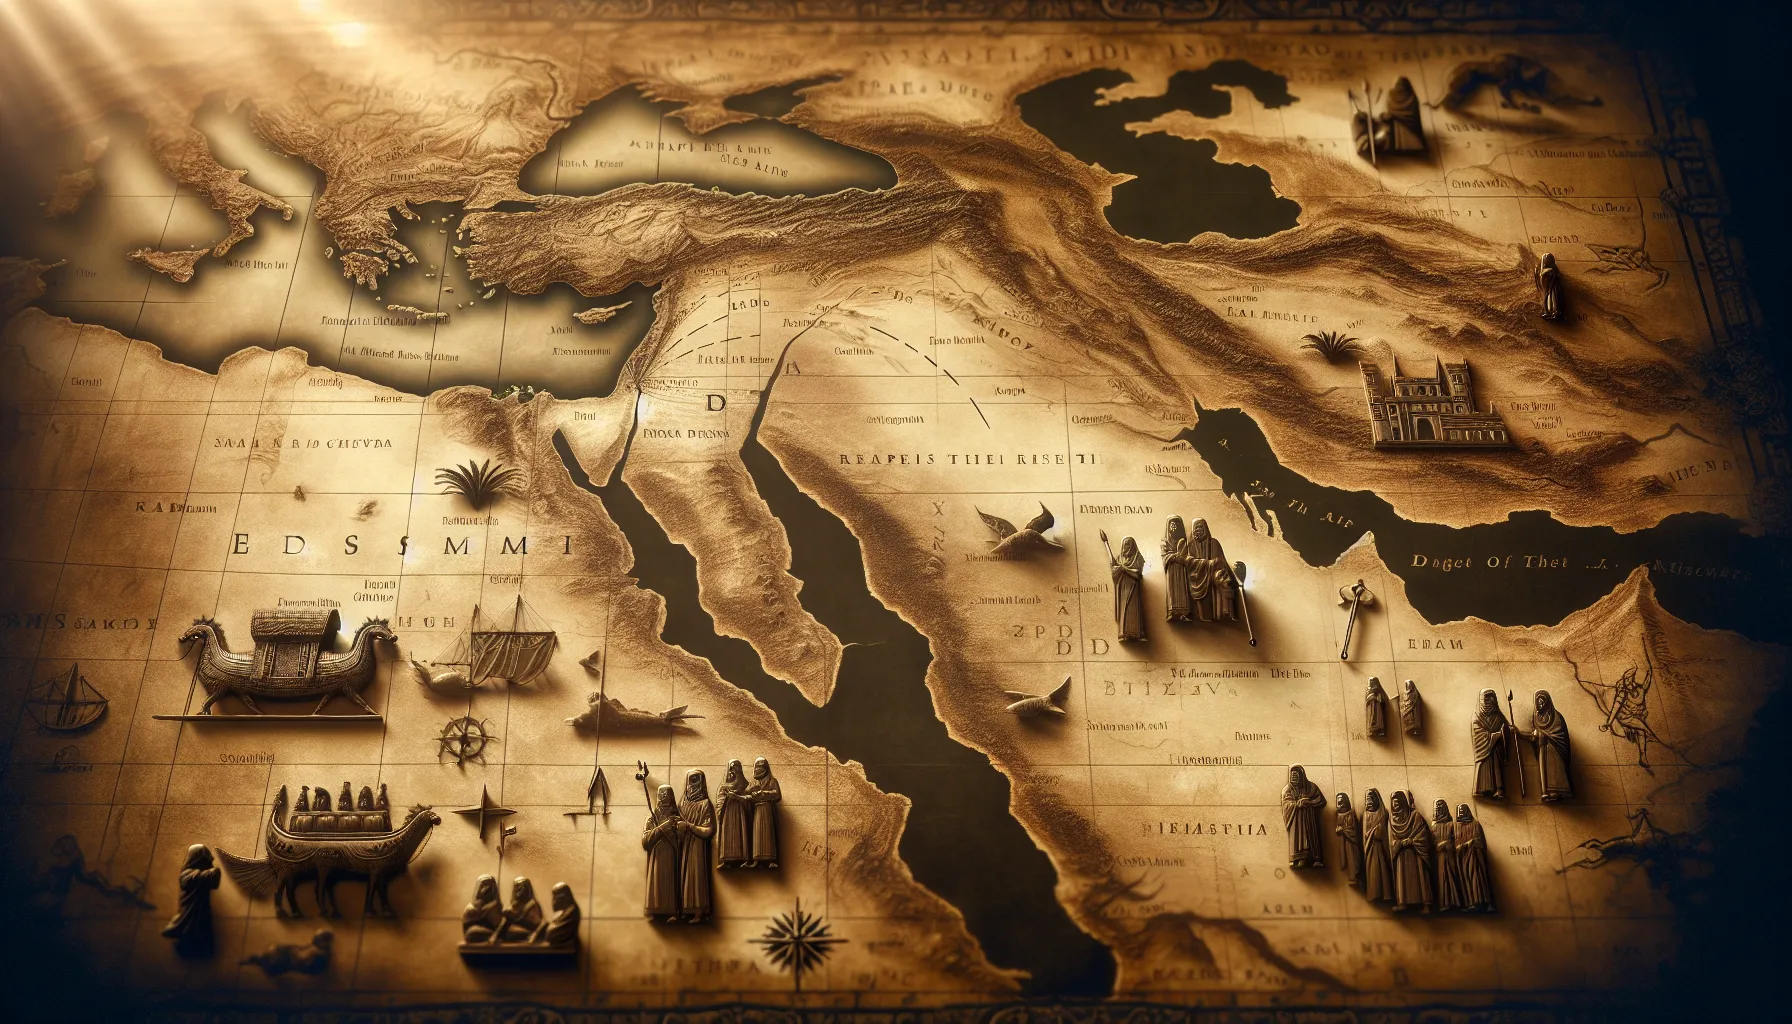 Imagen de un mapa antiguo del Oriente Medio con la región de Edom destacada, símbolos y figuras bíblicas en un fondo en tonos de sepia.